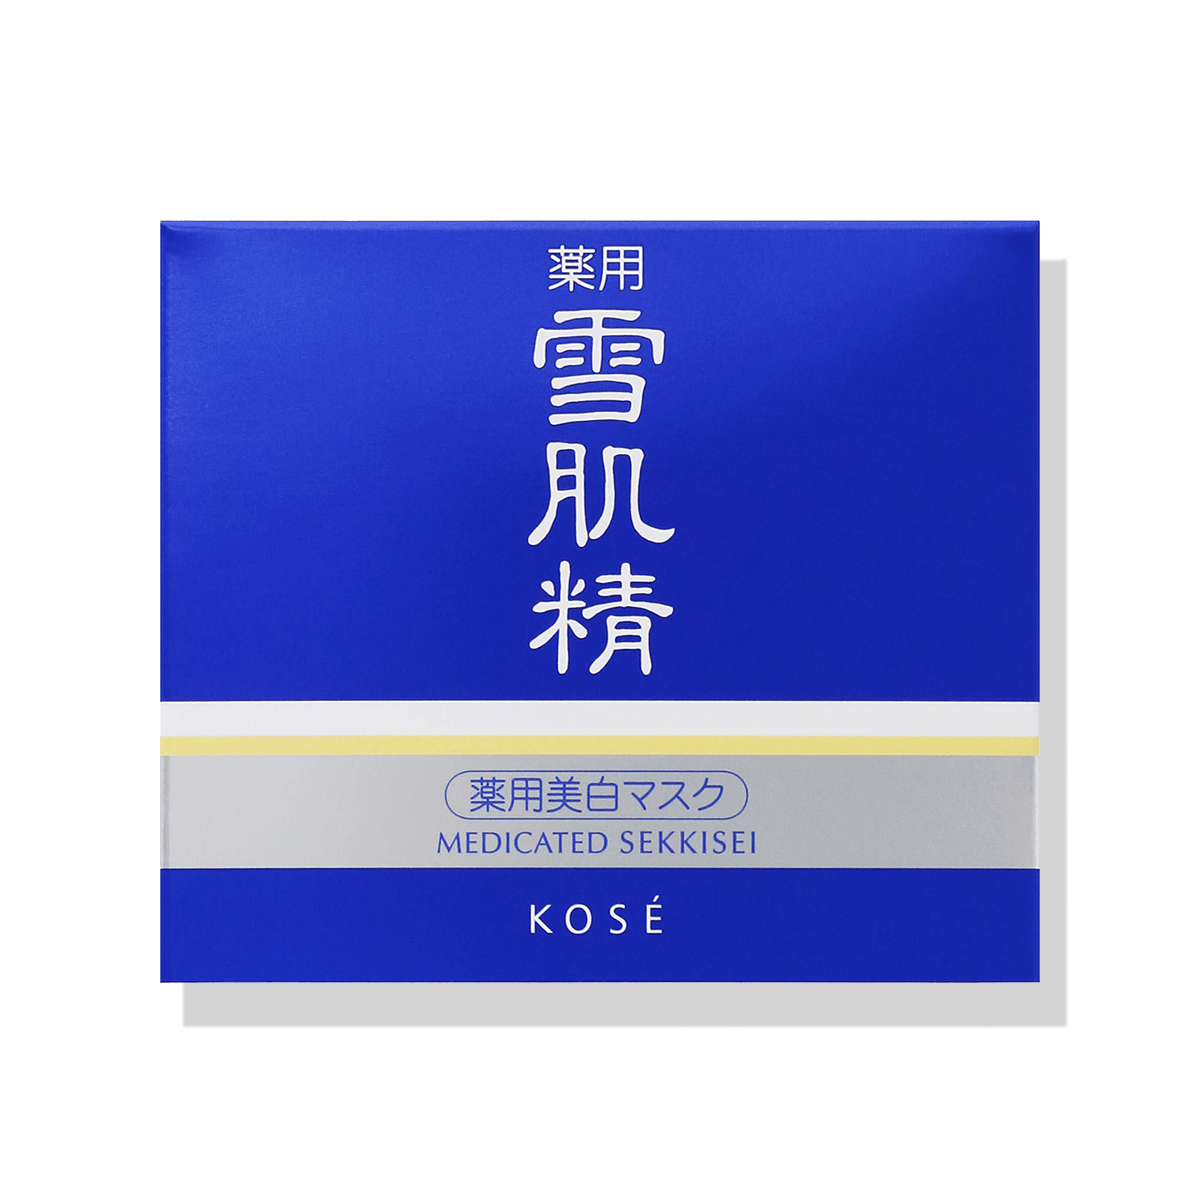 Kose Sekkisei Medicinal Snow Skin Herbal Esthe - Ichiban Mart